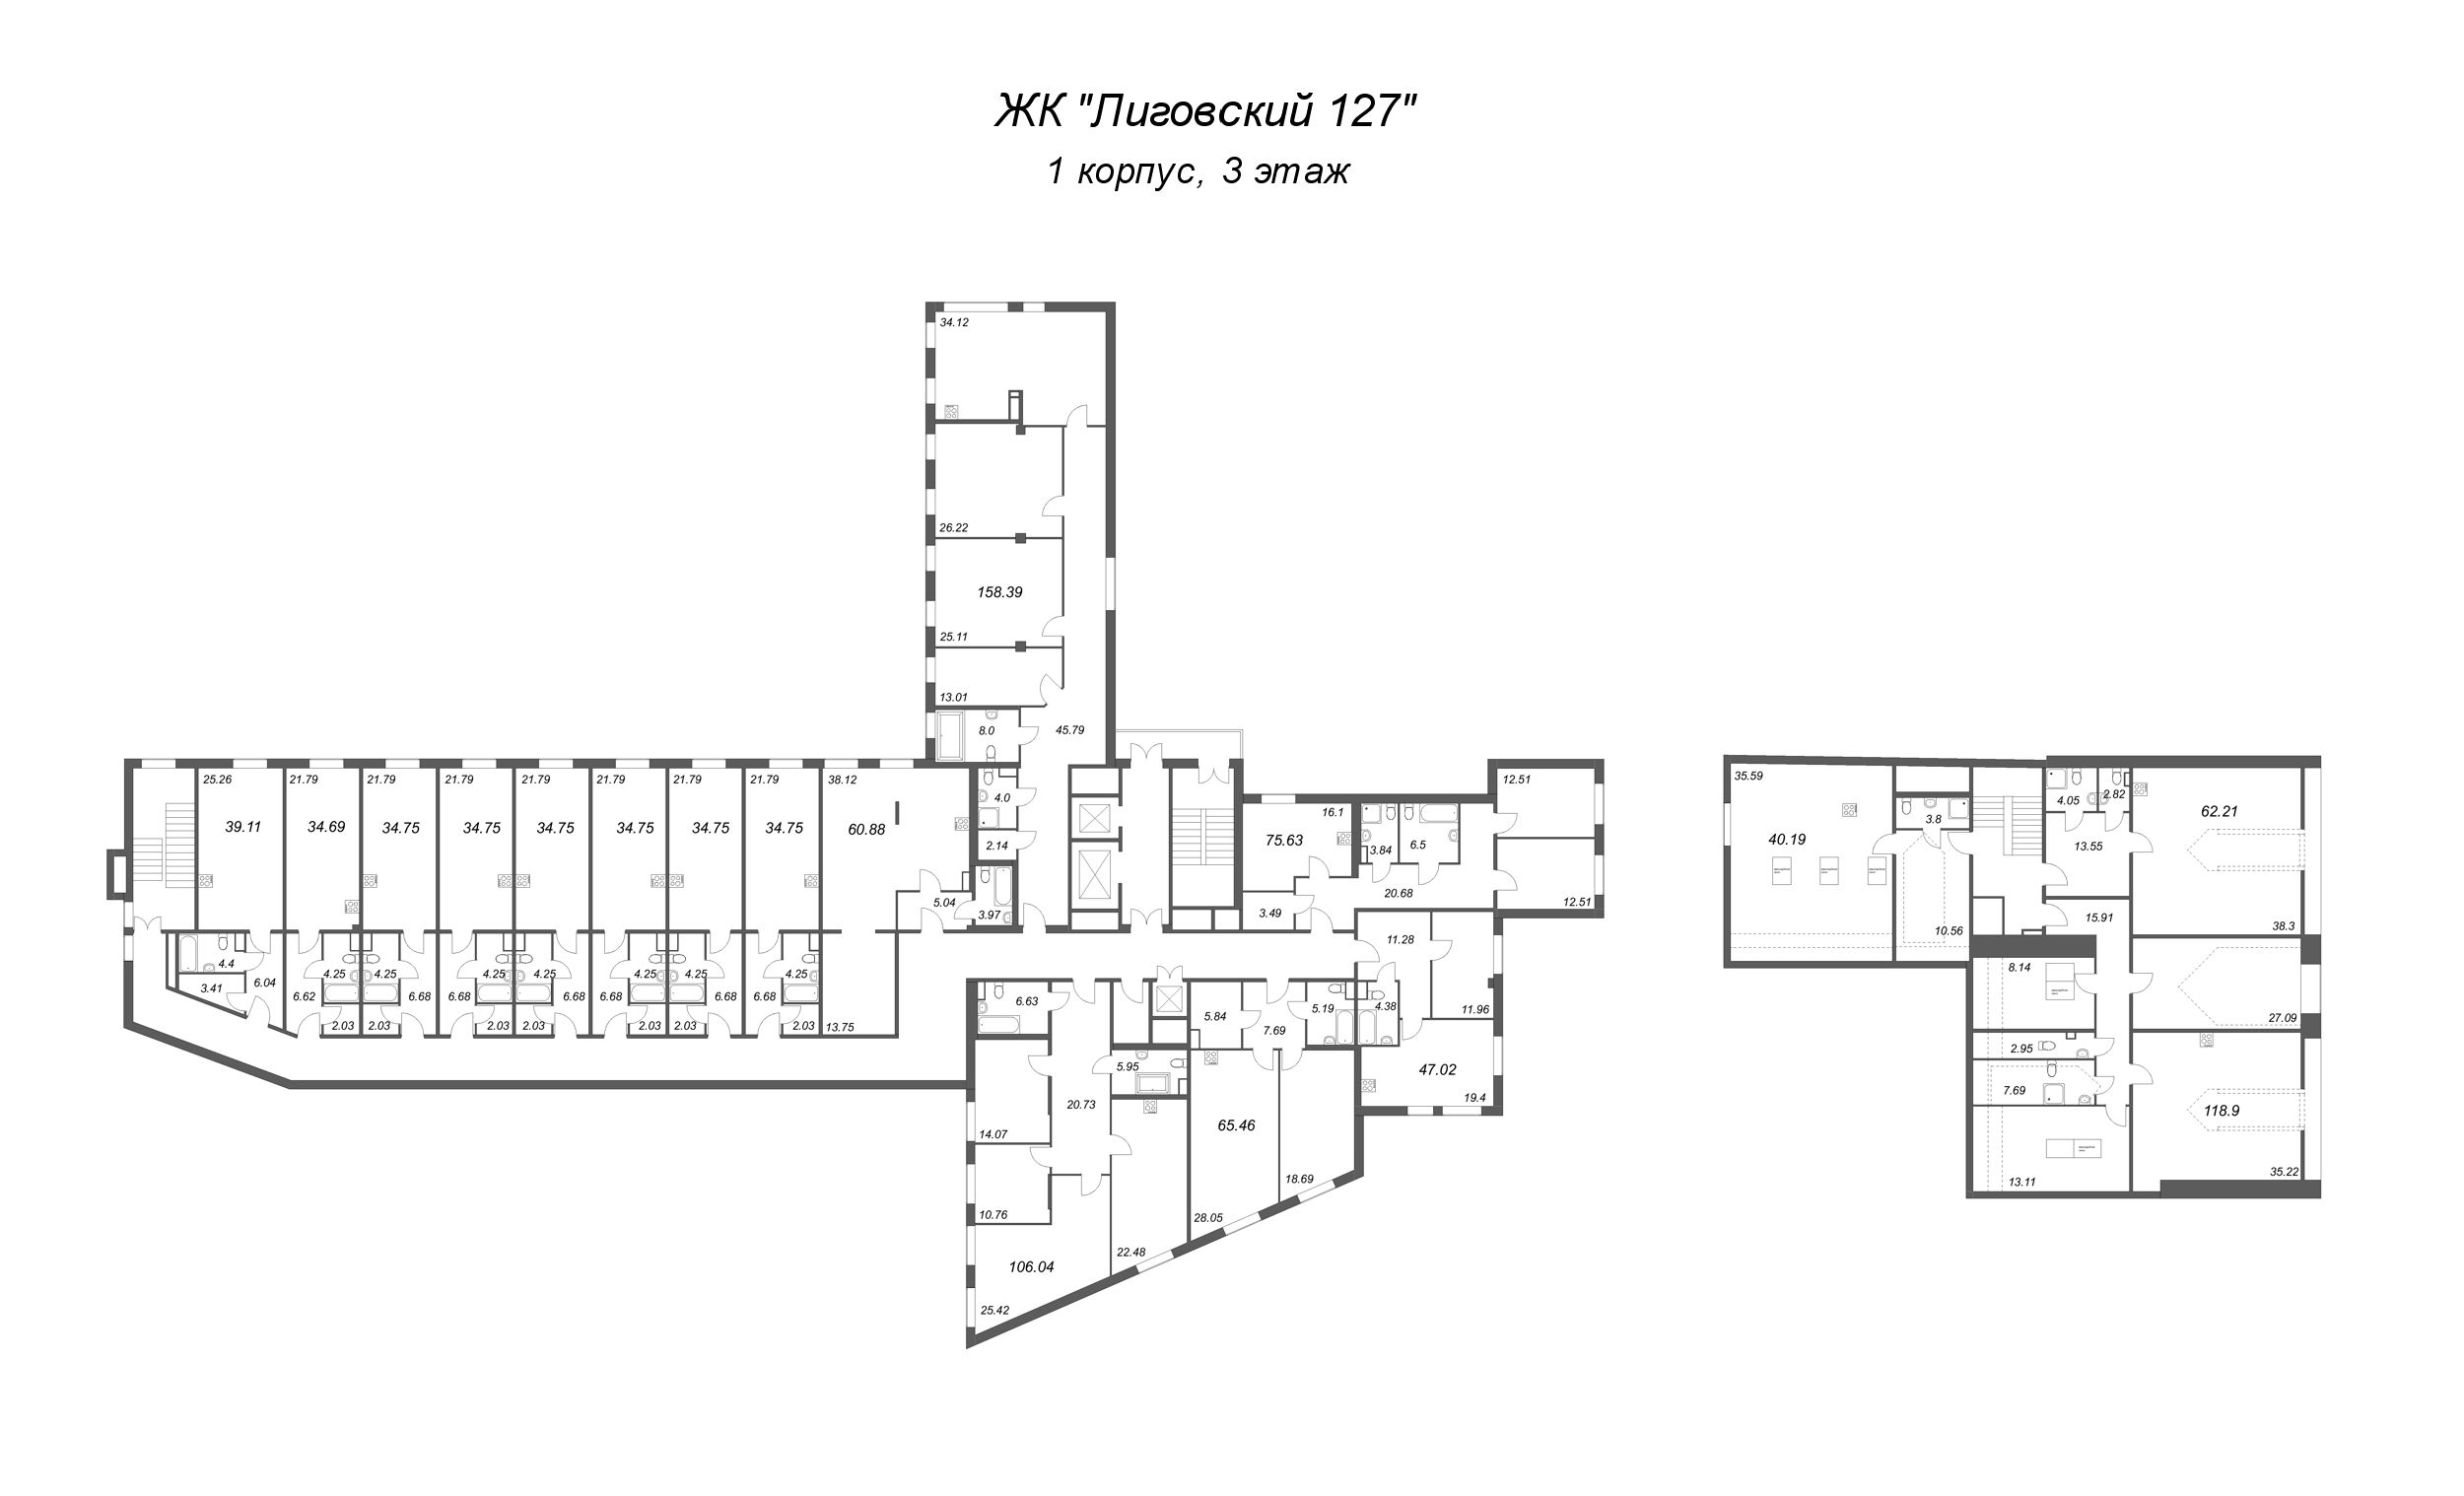 Квартира-студия, 34.75 м² в ЖК "Лиговский 127" - планировка этажа